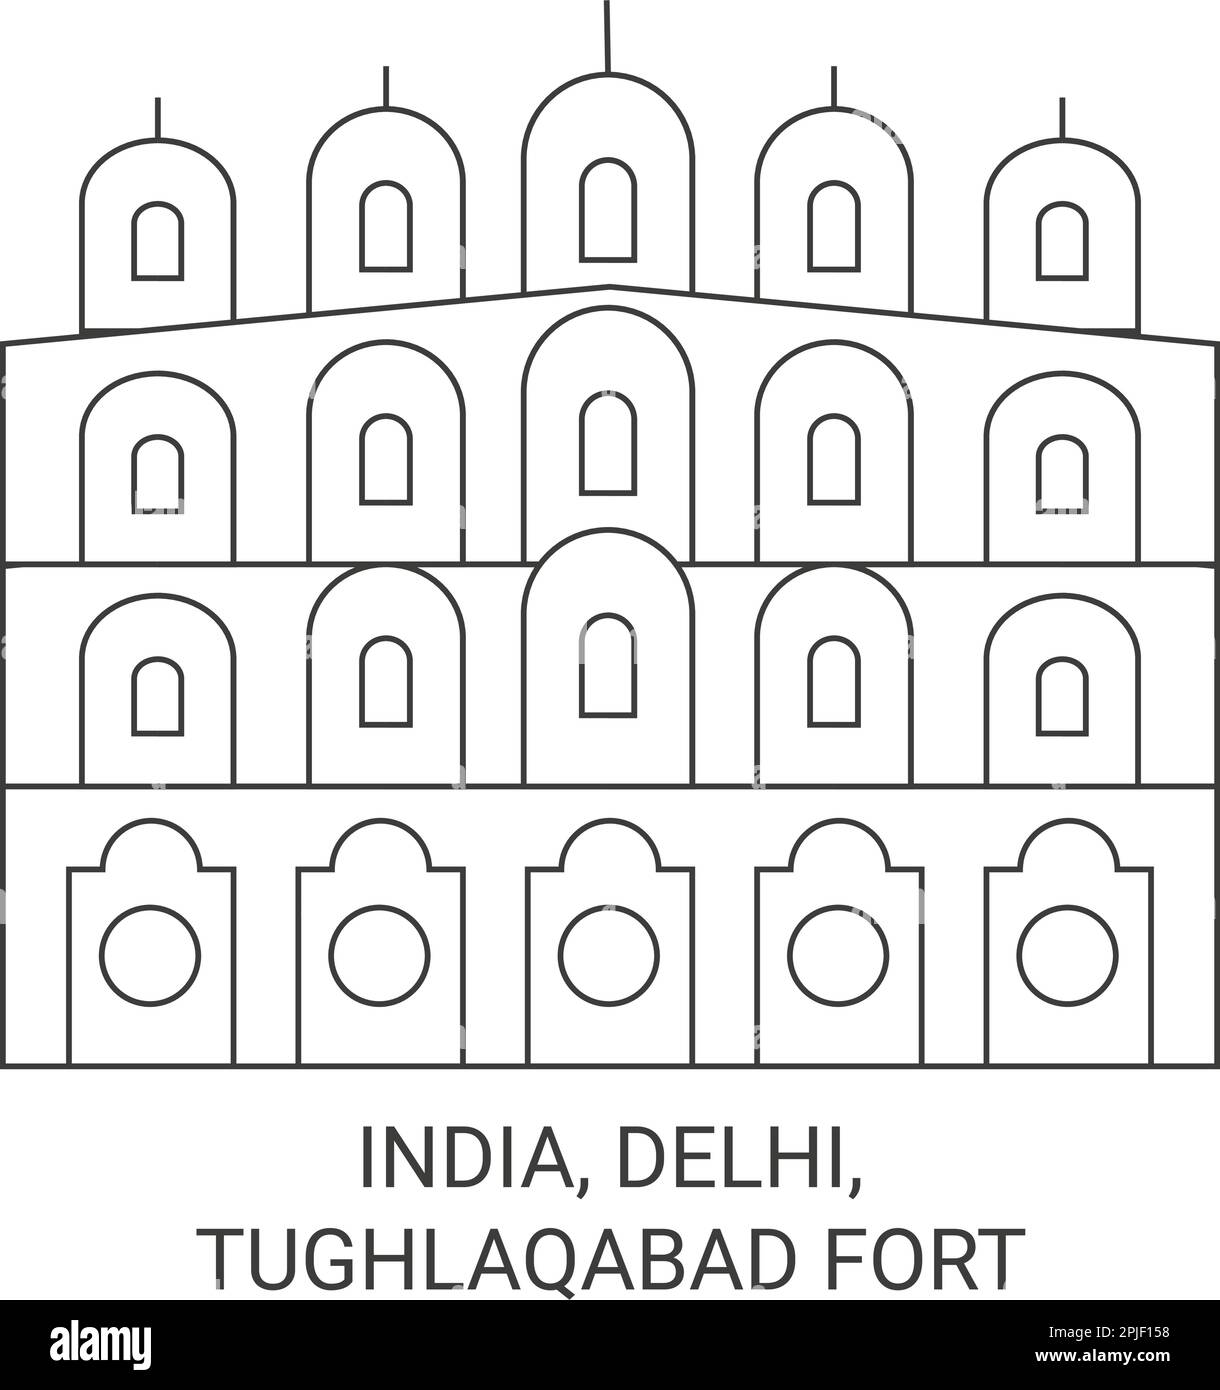 India, Delhi, Tughlaqabad Fort travel landmark vector illustration Stock Vector